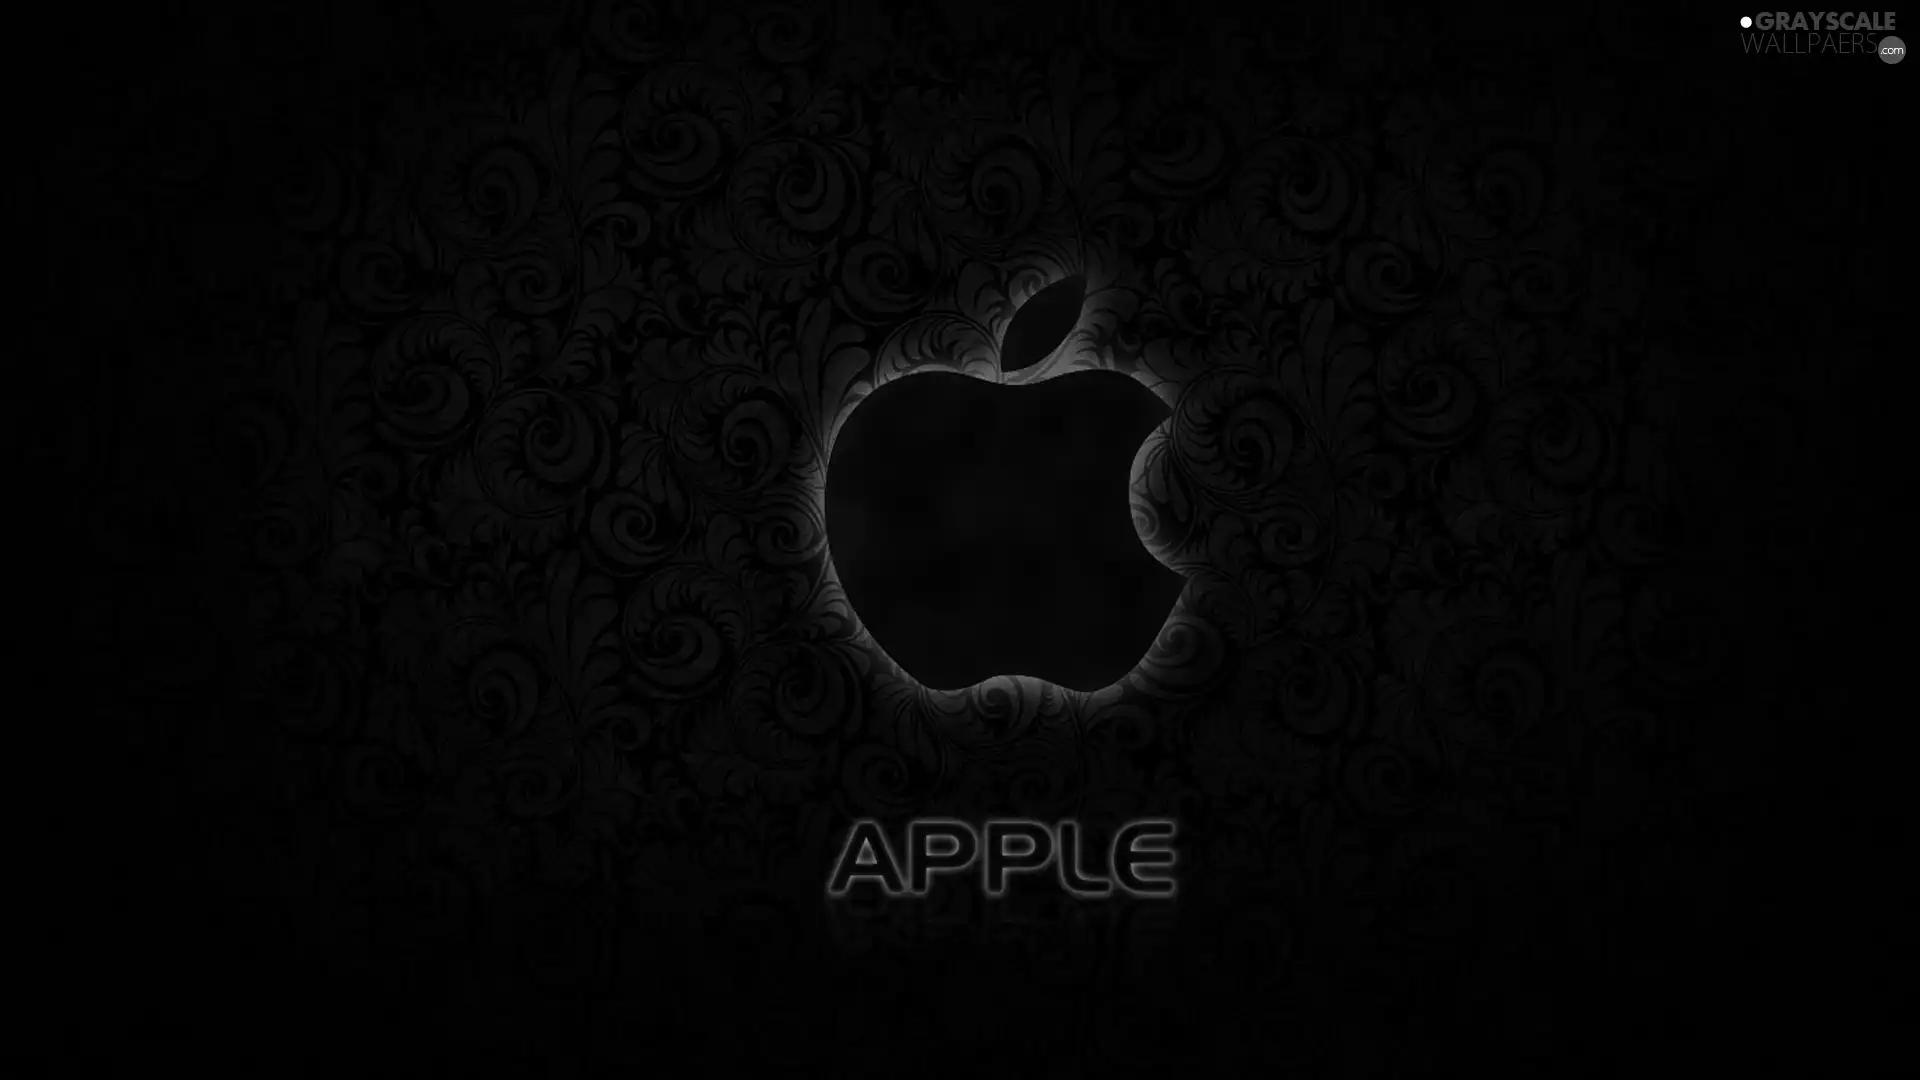 Black, background, outline, Apple, Violet